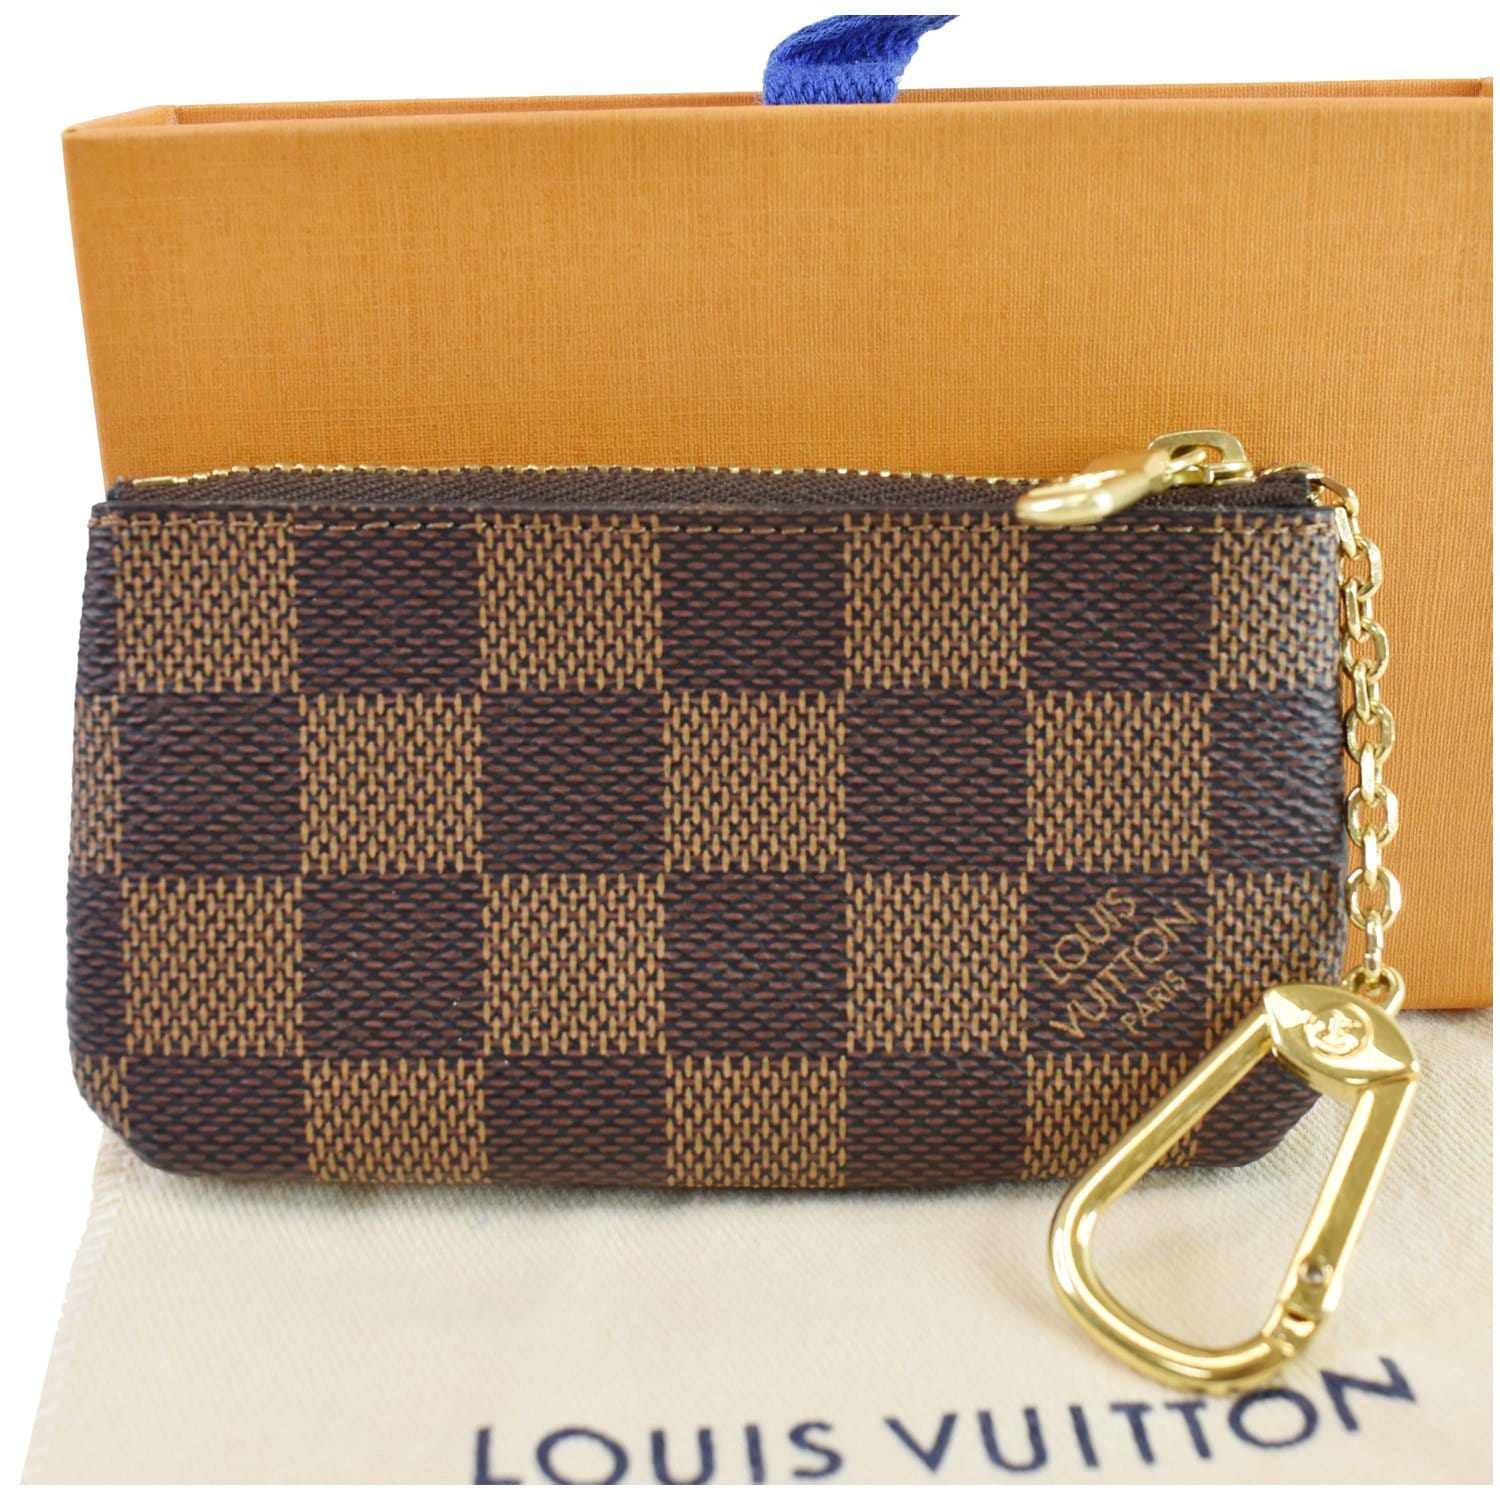 Louis Vuitton Key Pouch Cles - Damier Azur